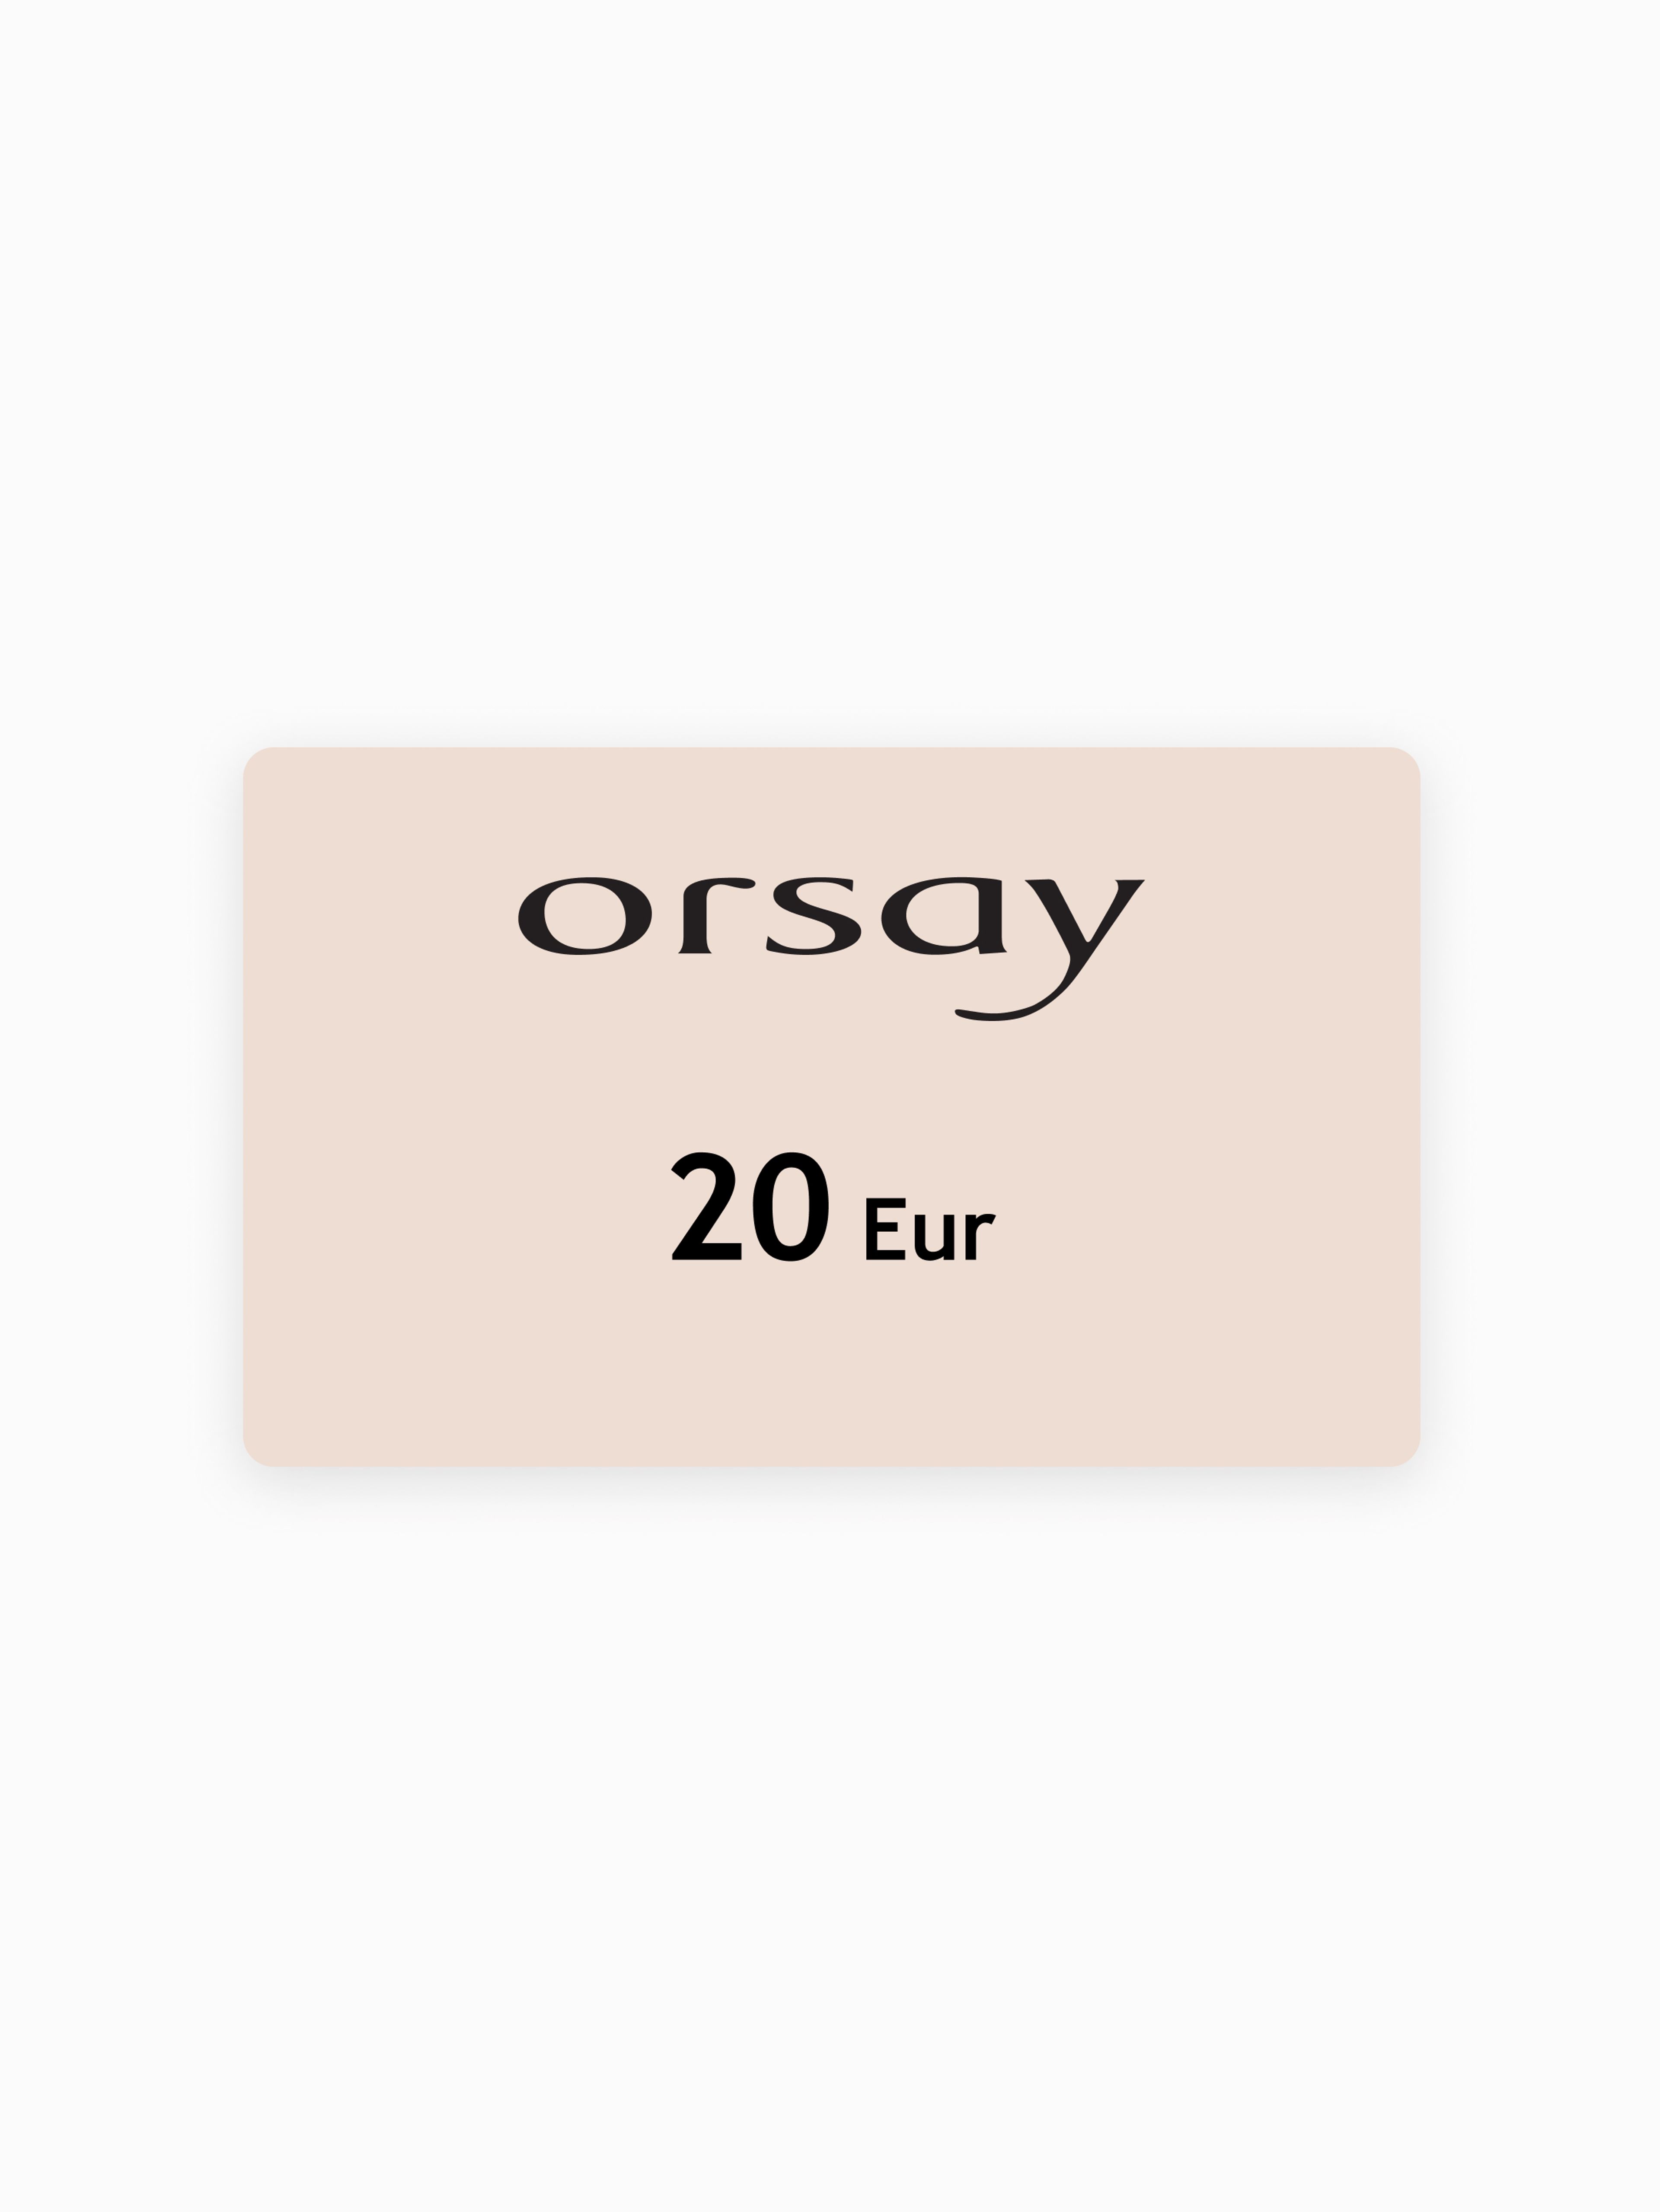 Elektronički bon ORSAY u vrijednosti 20 EUR